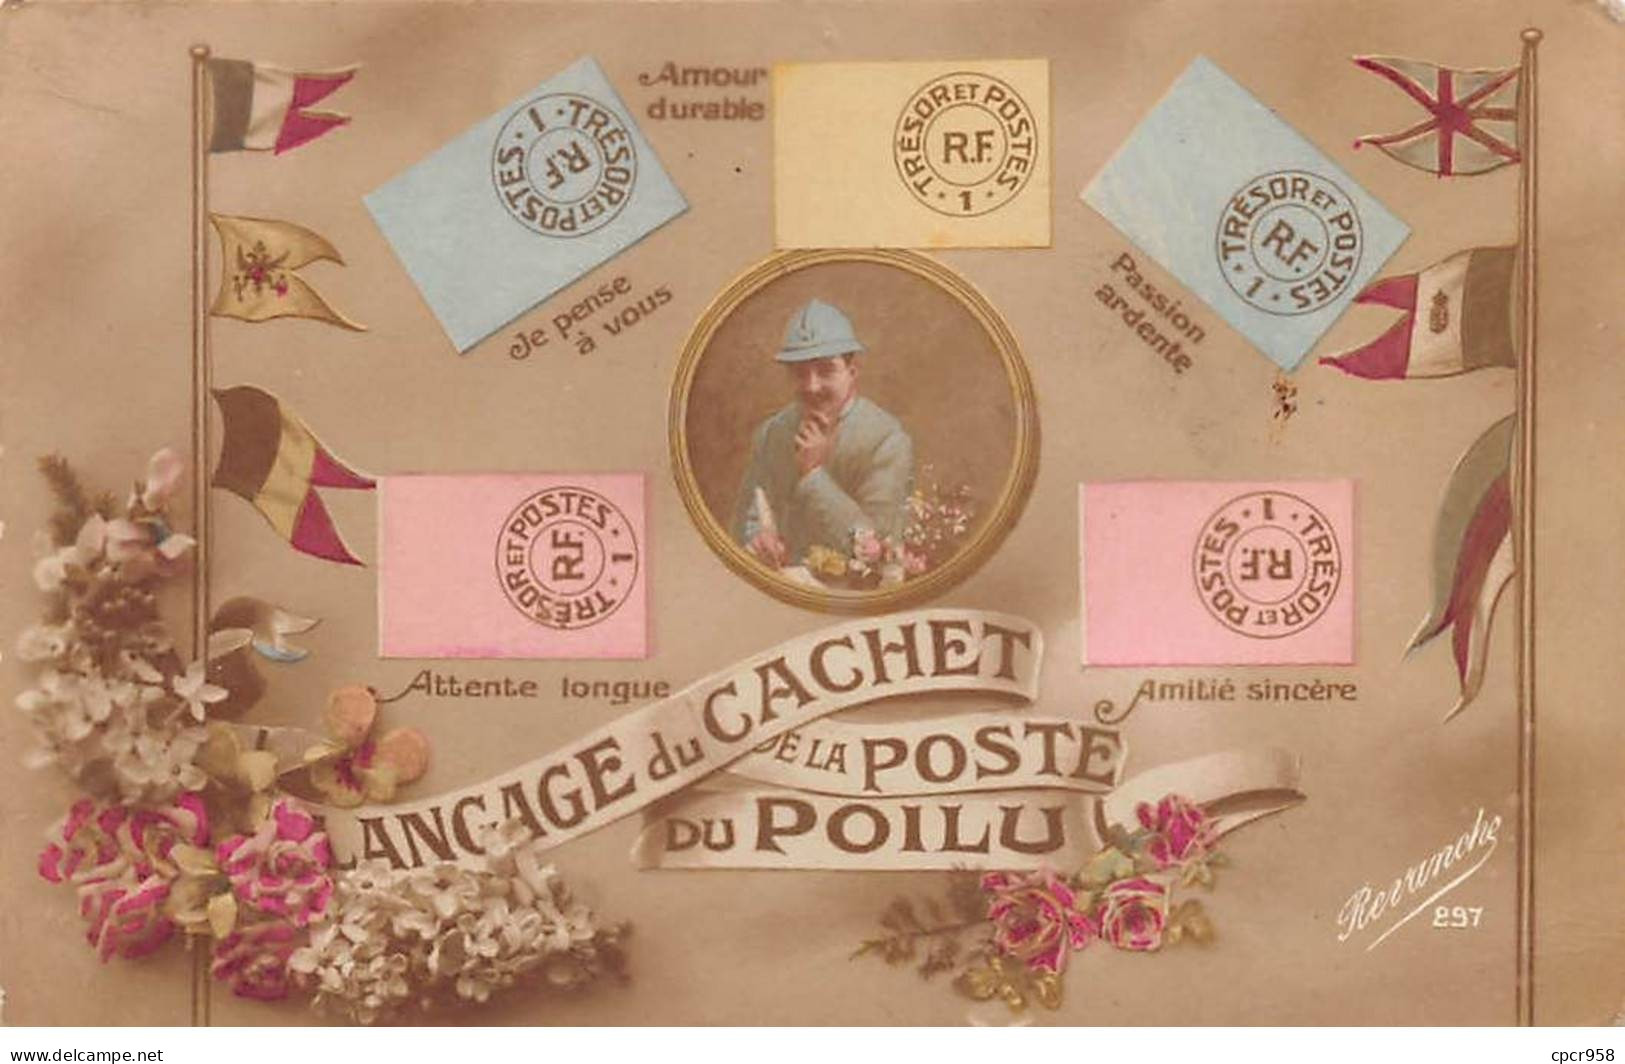 Représentations Timbres - N°90875 - Langage Du Cachet De La Poste Du Poilu - Amour Durable, Passion Ardente .... - Briefmarken (Abbildungen)